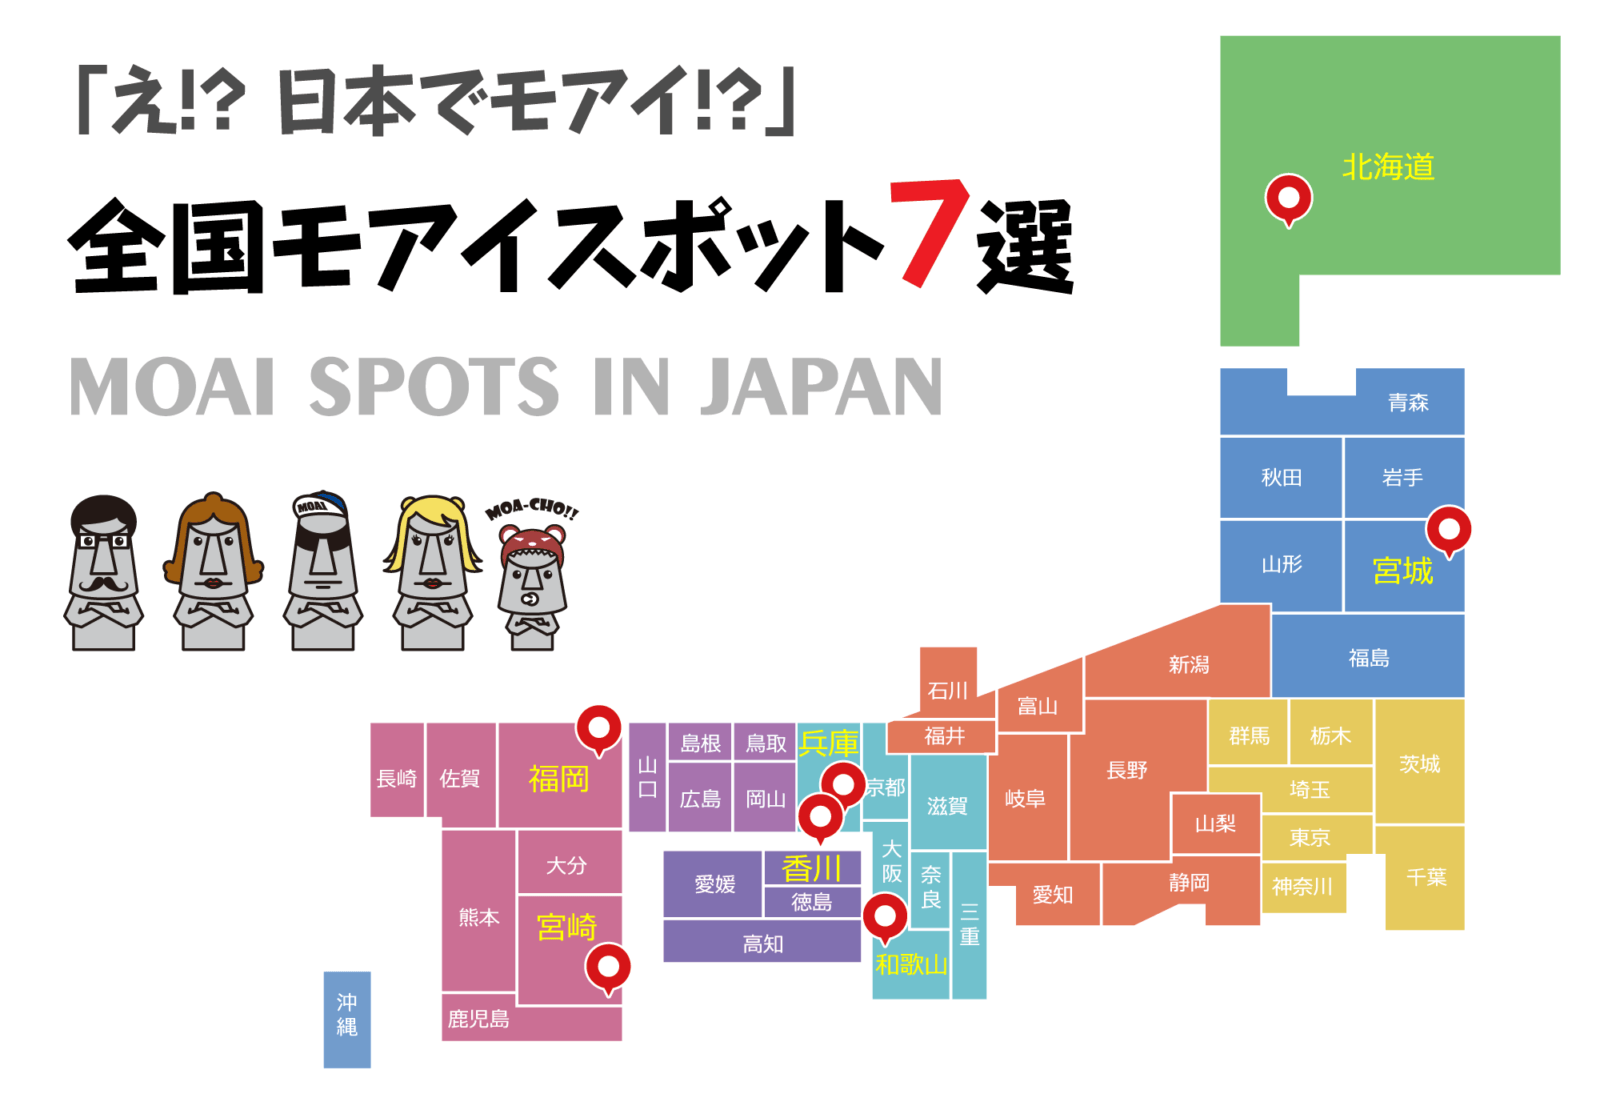 日本にモアイ像 全国に点在する7つのモアイスポット 南三陸モアイファミリー